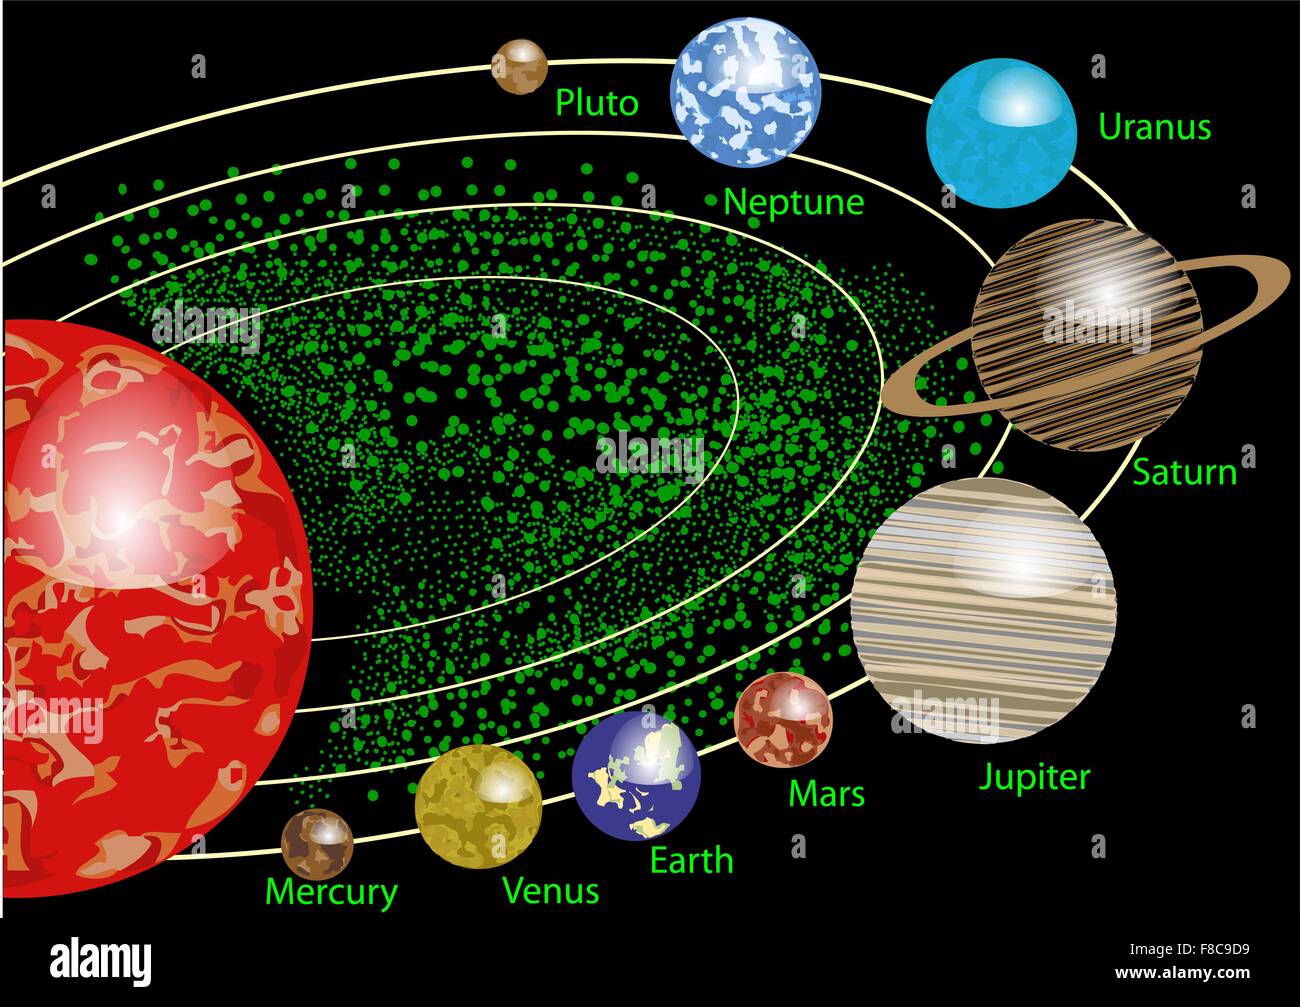 el-dibujo-de-los-planetas-con-sus-nombres-una-representacion-visual-del-sistema-solar